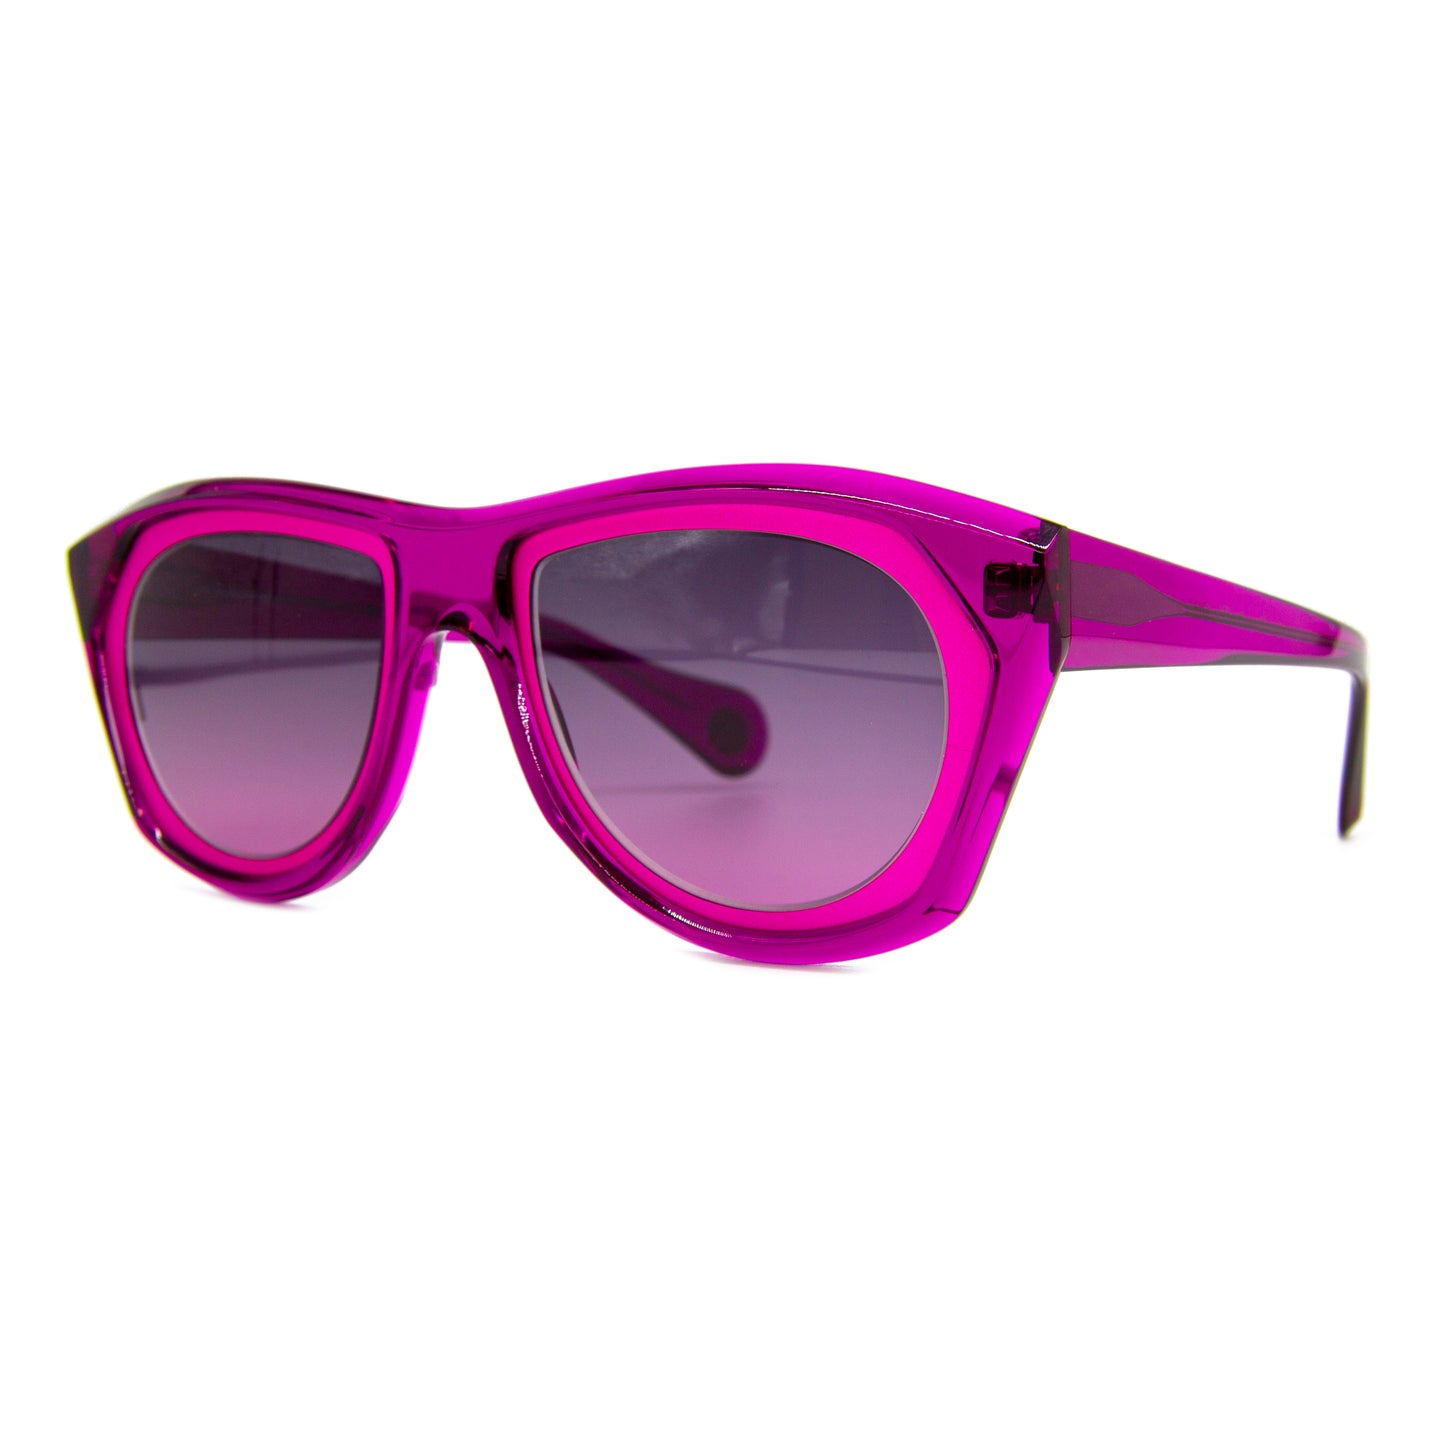 Theo - Eyewear - Mille+92 - 11 - Pink